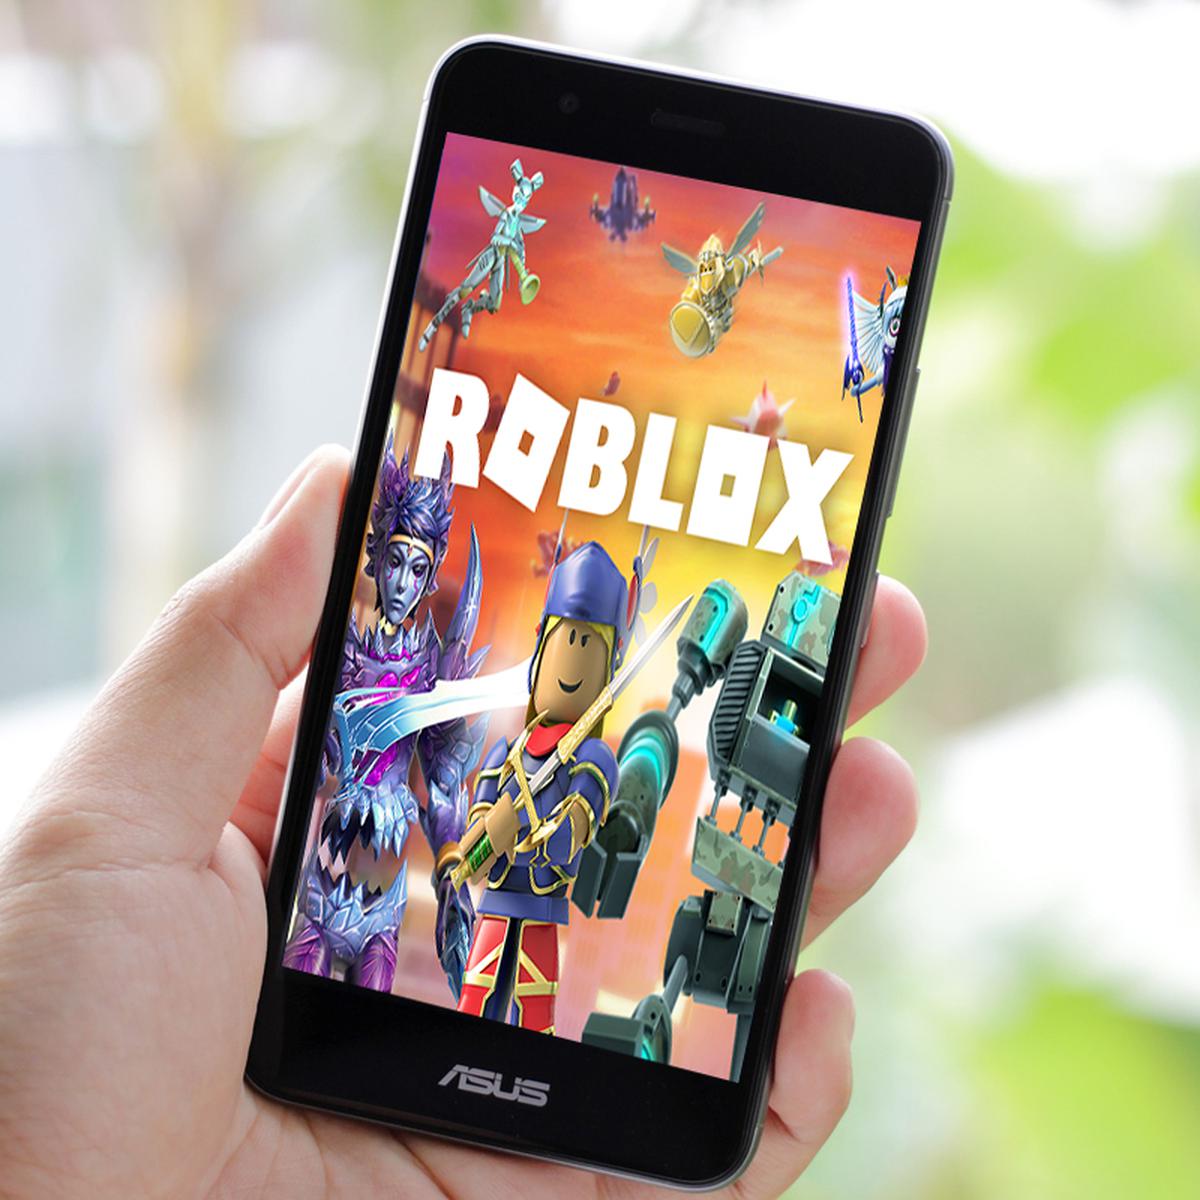 Cómo instalar y jugar Roblox en móviles Android